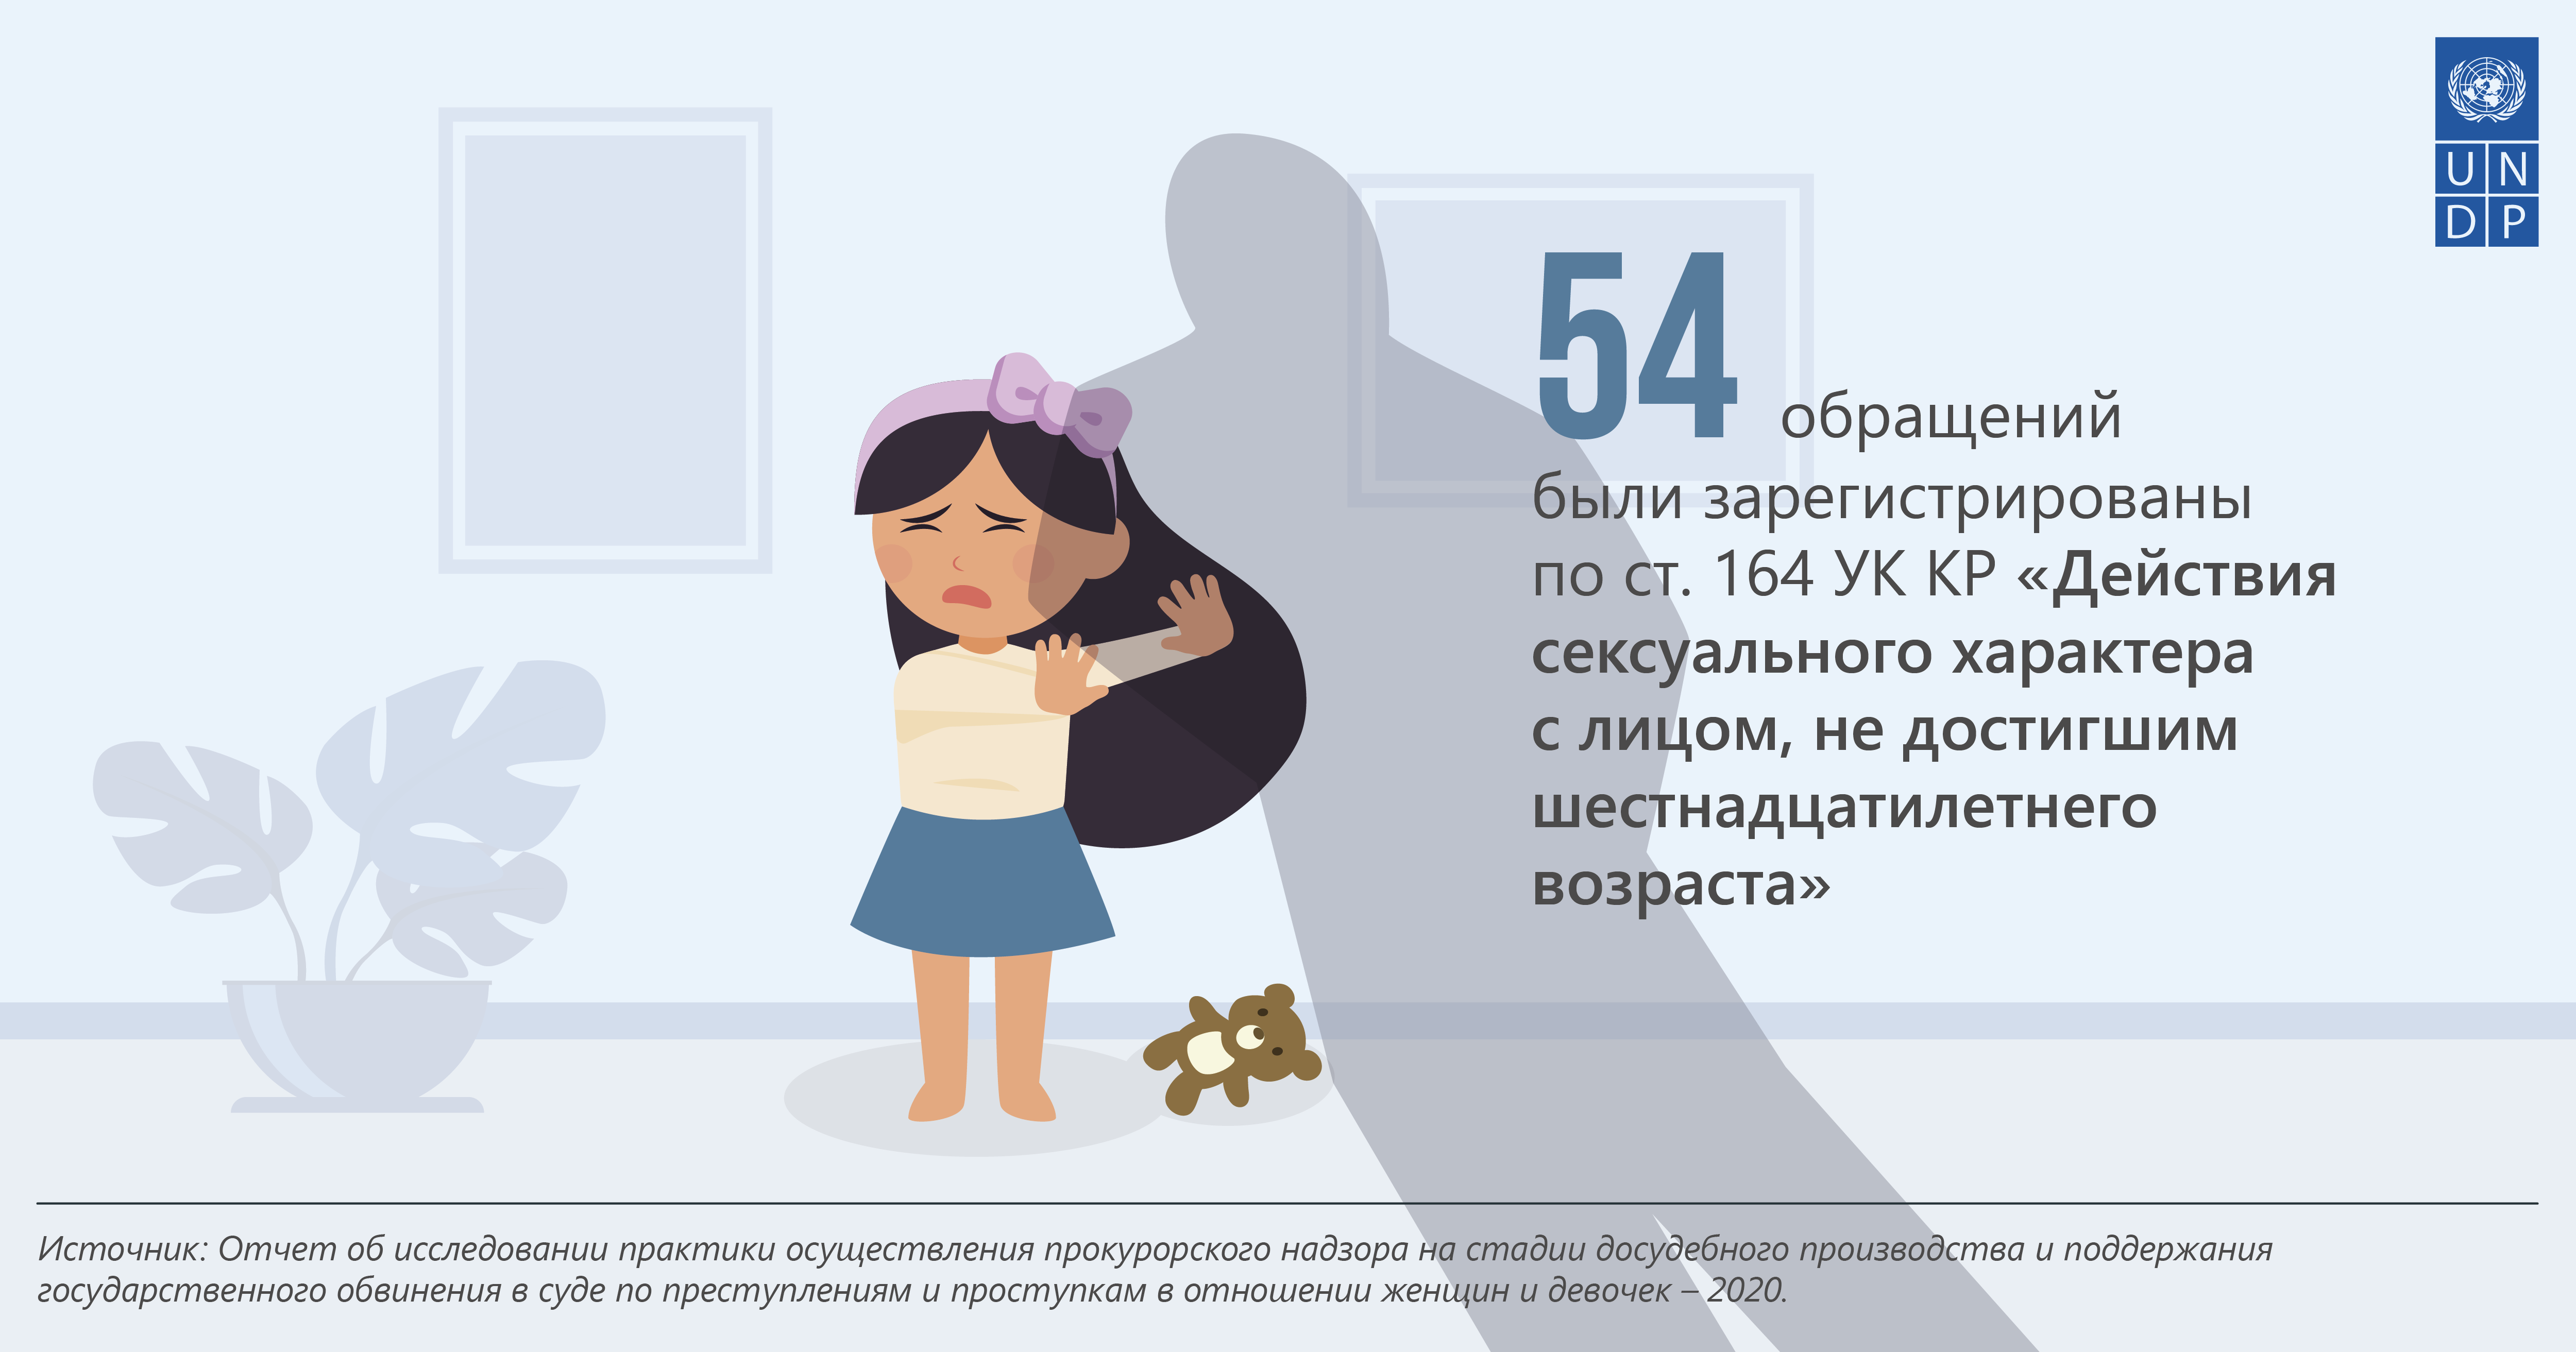 Снижение возраста согласия. Развод в Кыргызстане. Возраст согласия в Кыргызстане. Гендерное насилие Кыргызстан. Домашнее насилие в Кыргызстане статистика.